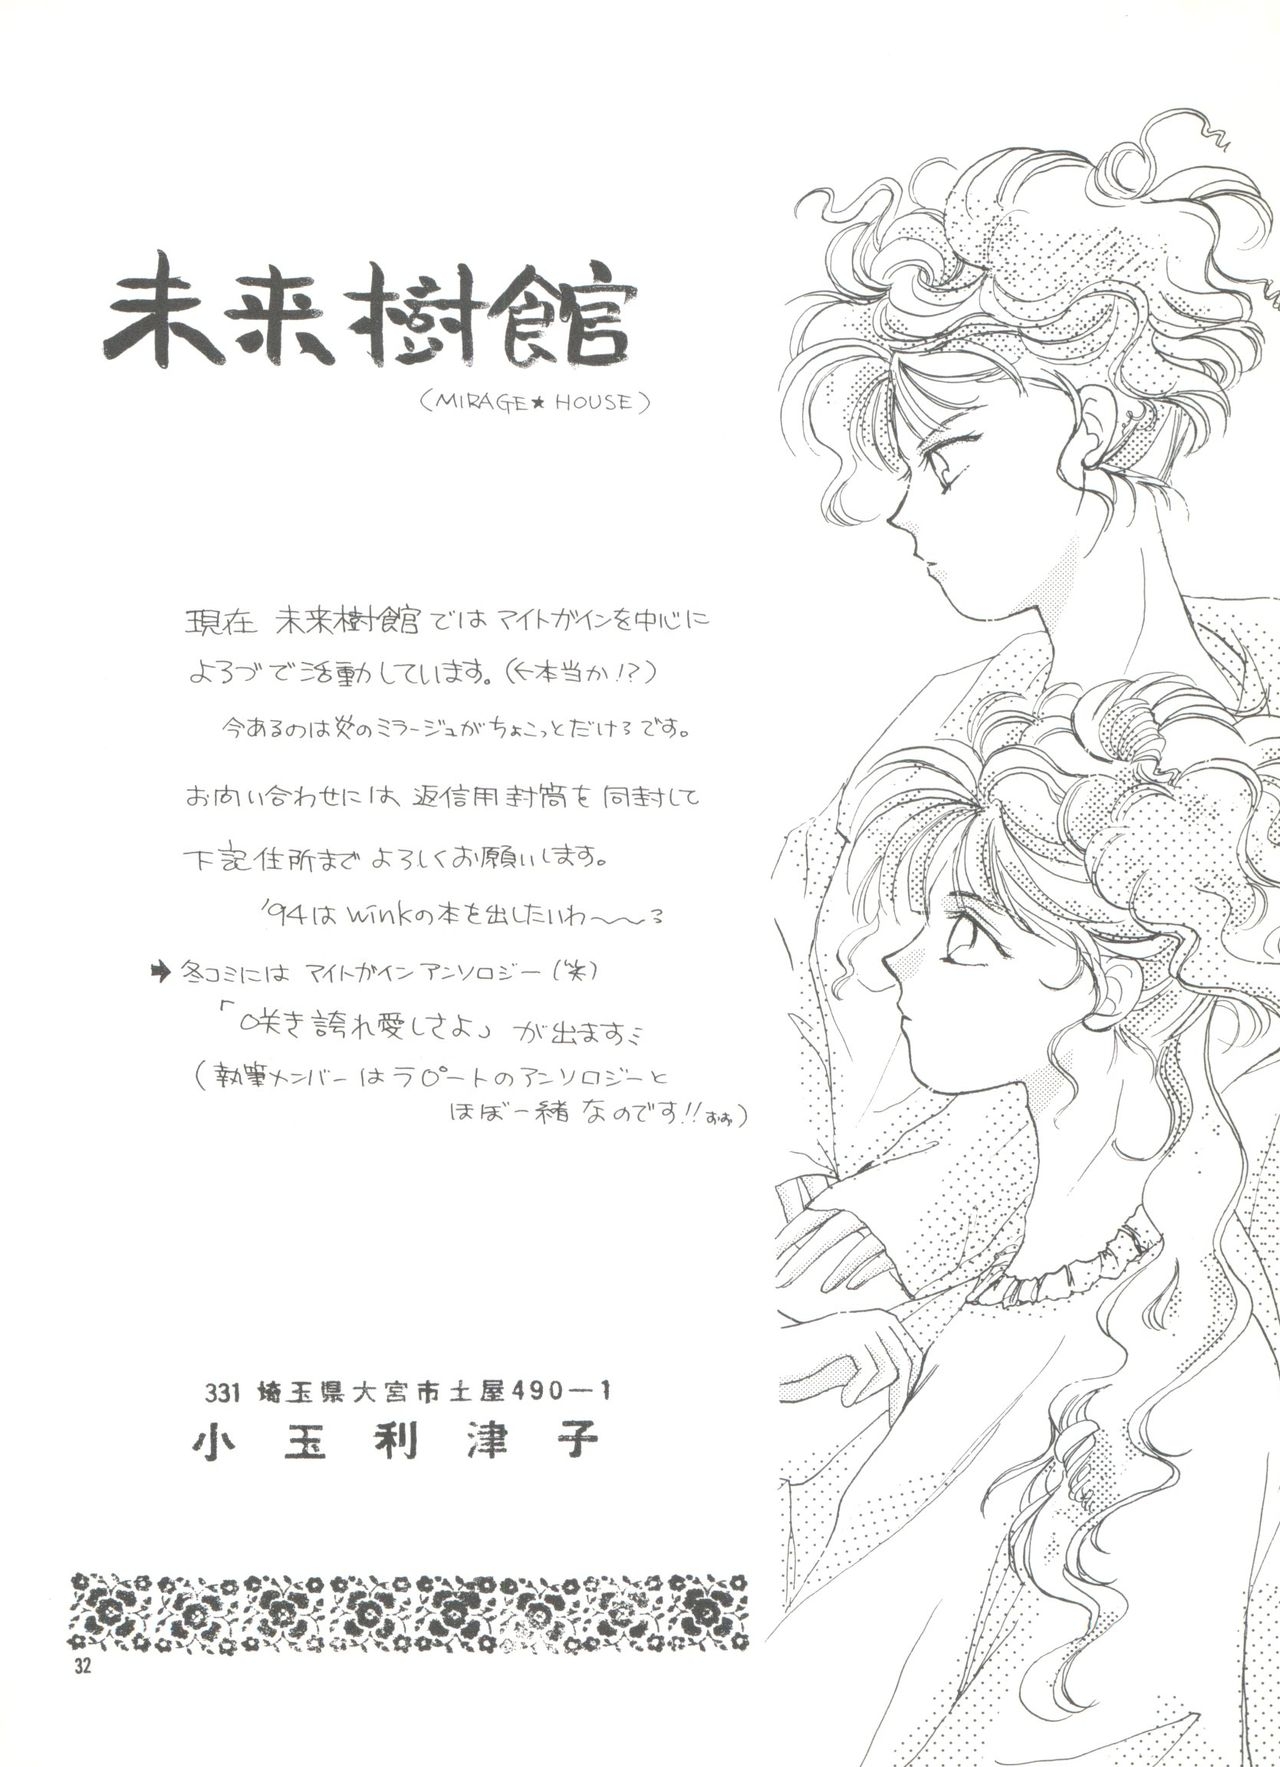 [SSN192 (Various)] Ryoute Demo Tarinai 2 (Hime-chan no Ribbon) 31